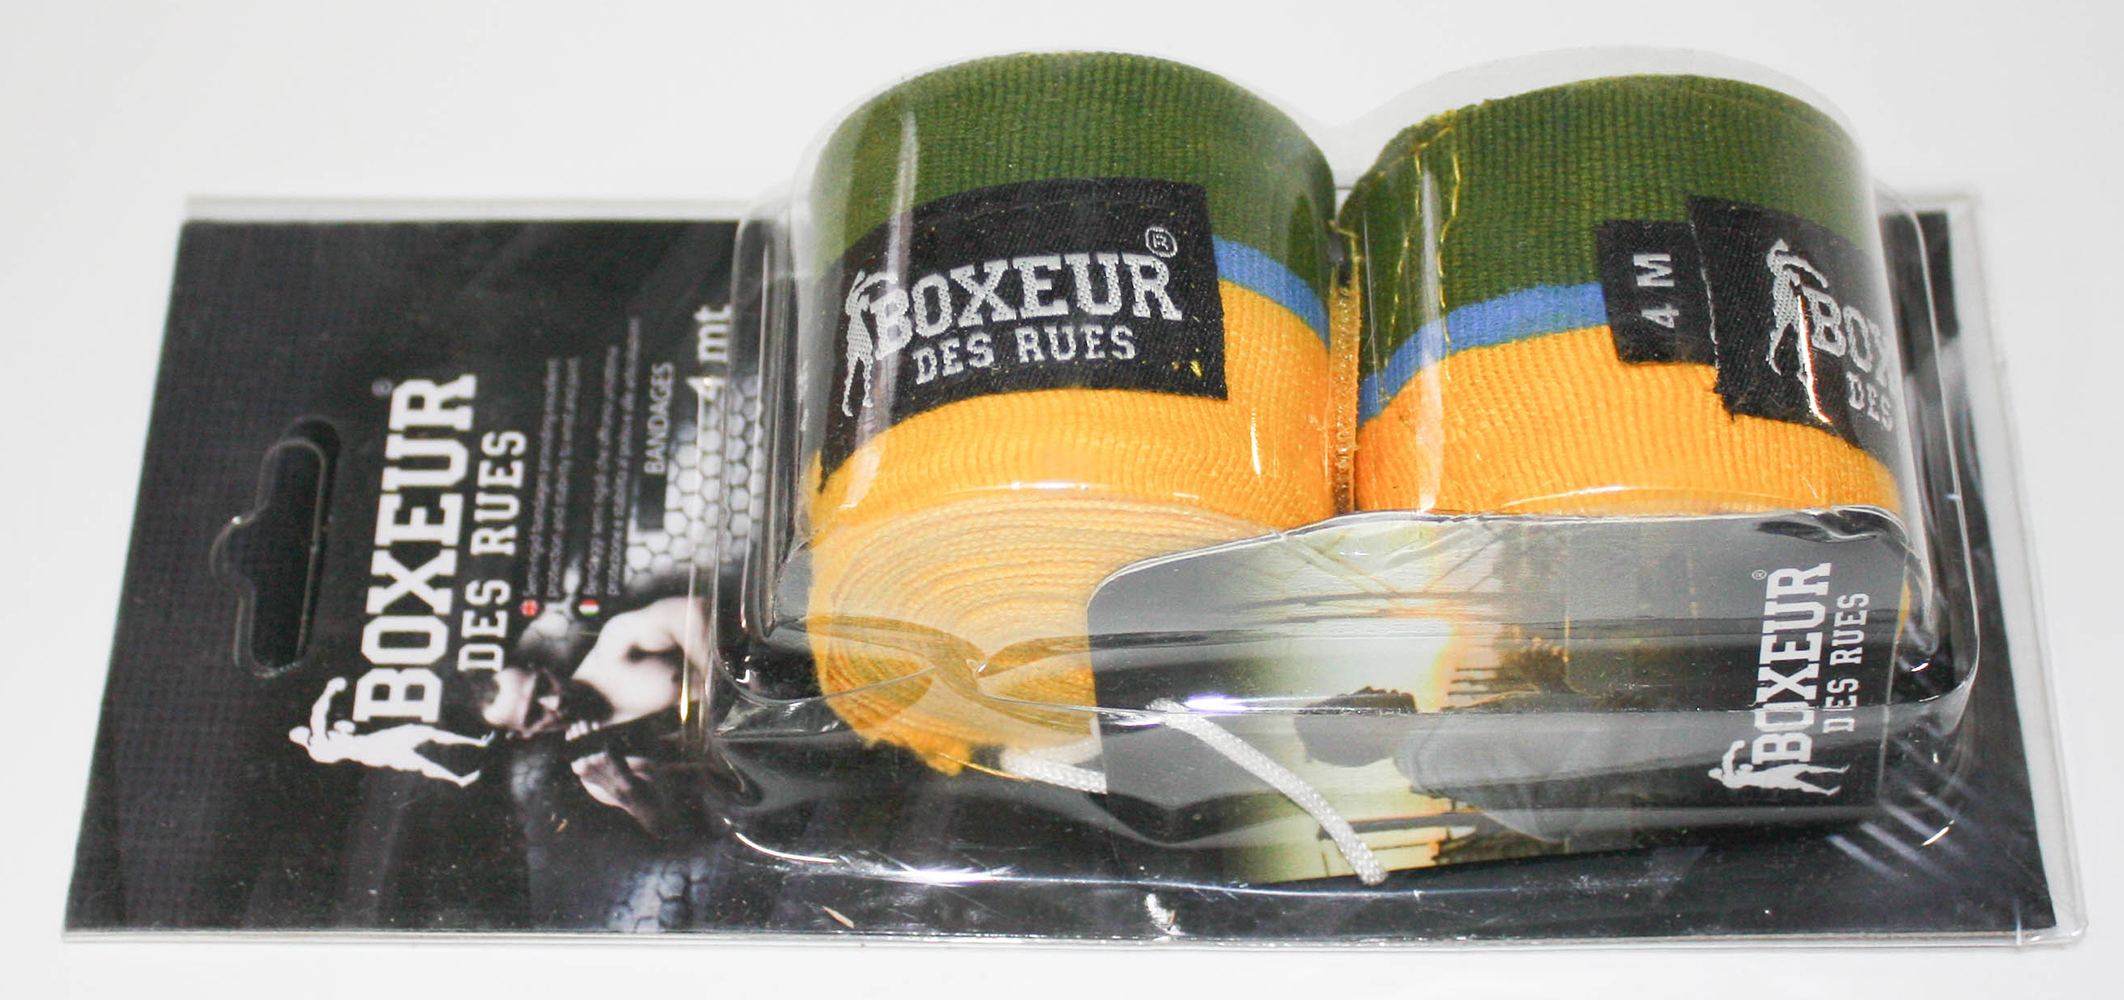 3 € / m BOXEUR DES RUES BX-GH03Y Bandages semi-rigides 4.0 m drapeau Brésilien U